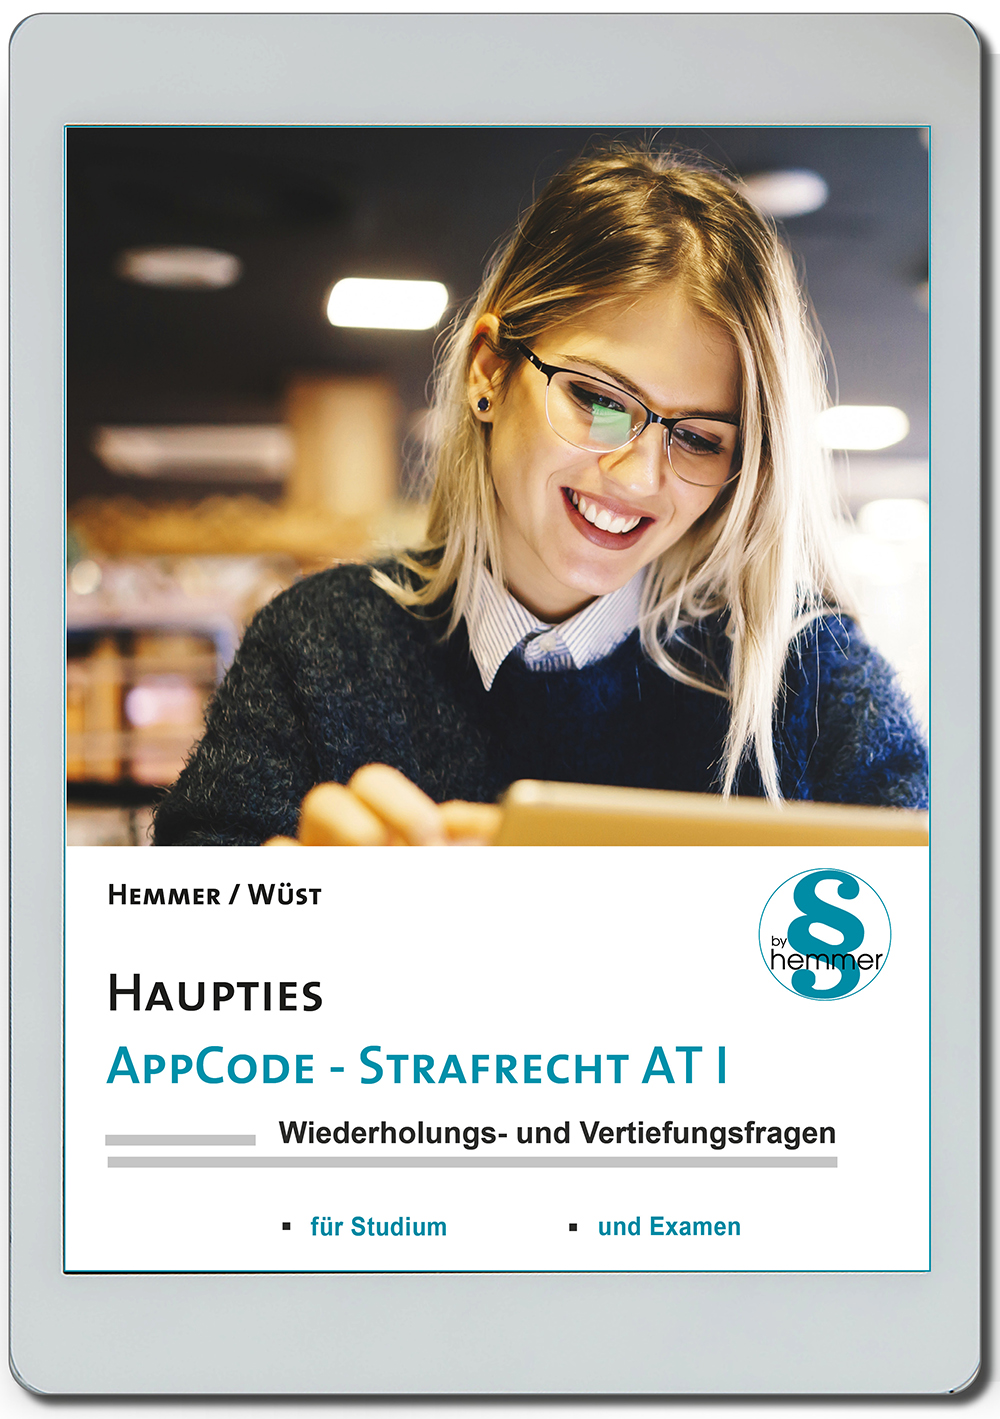 AppCode - haupties - Strafrecht AT I